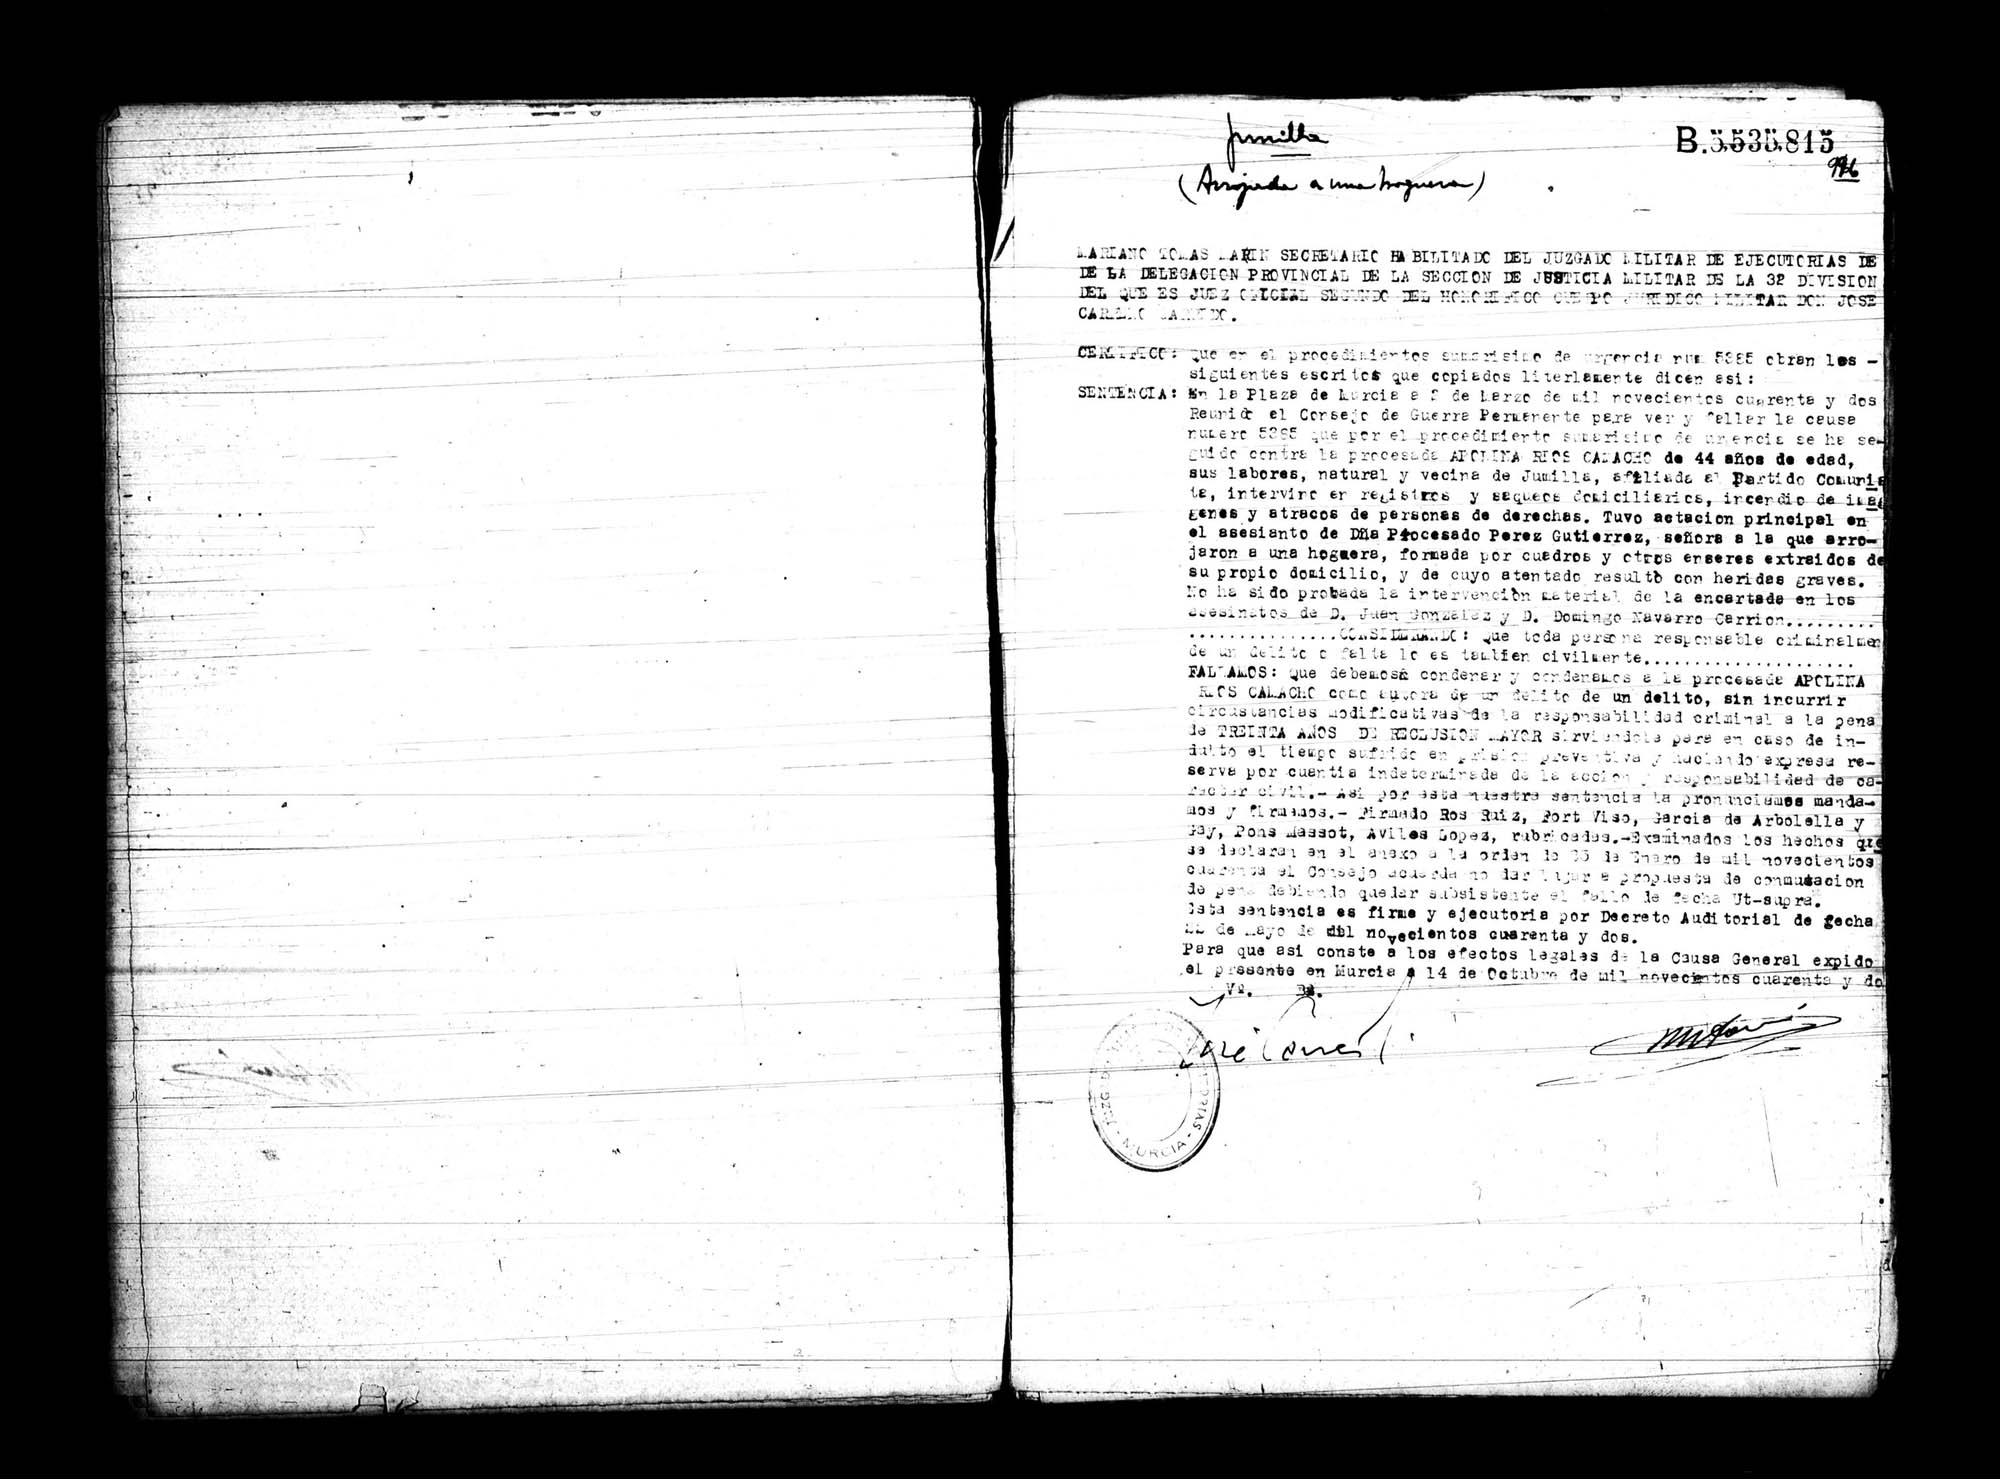 Certificado de la sentencia pronunciada contra Apolina Ríos Camacho, causa 5385, el 2 de marzo de 1942 en Murcia.